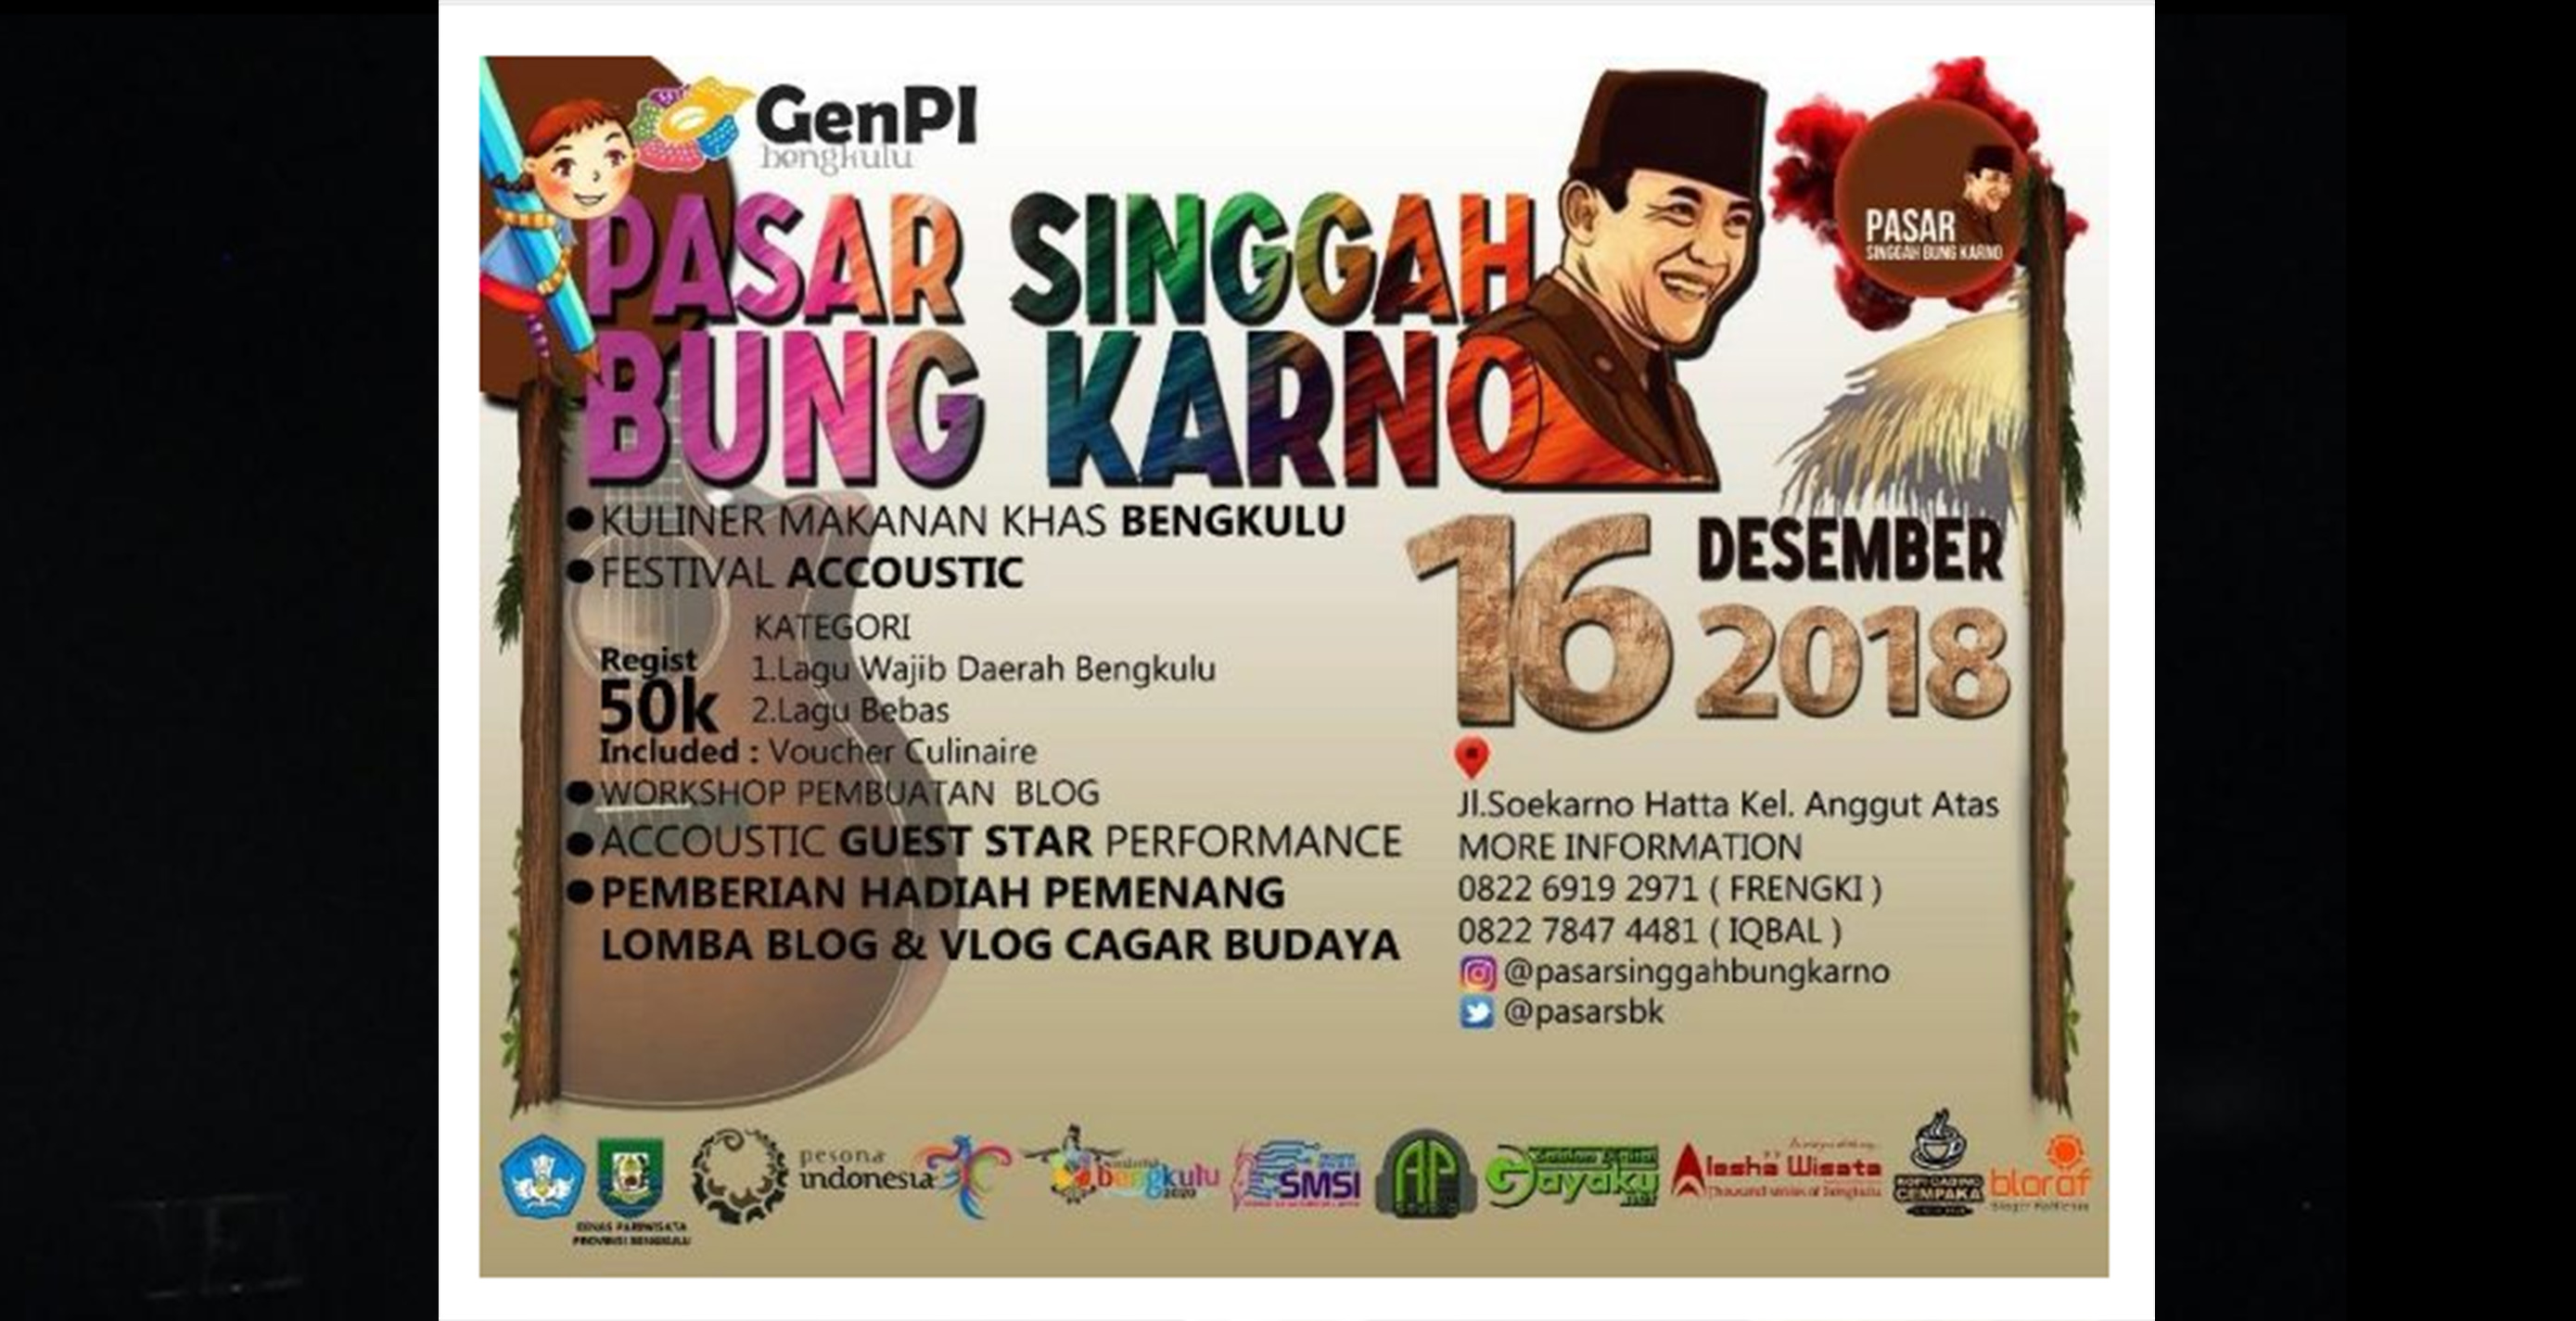 Pasar Singgah Bung Karno yang akan digelar Minggu 16 Desember 2018 di Rumah Bung Karno